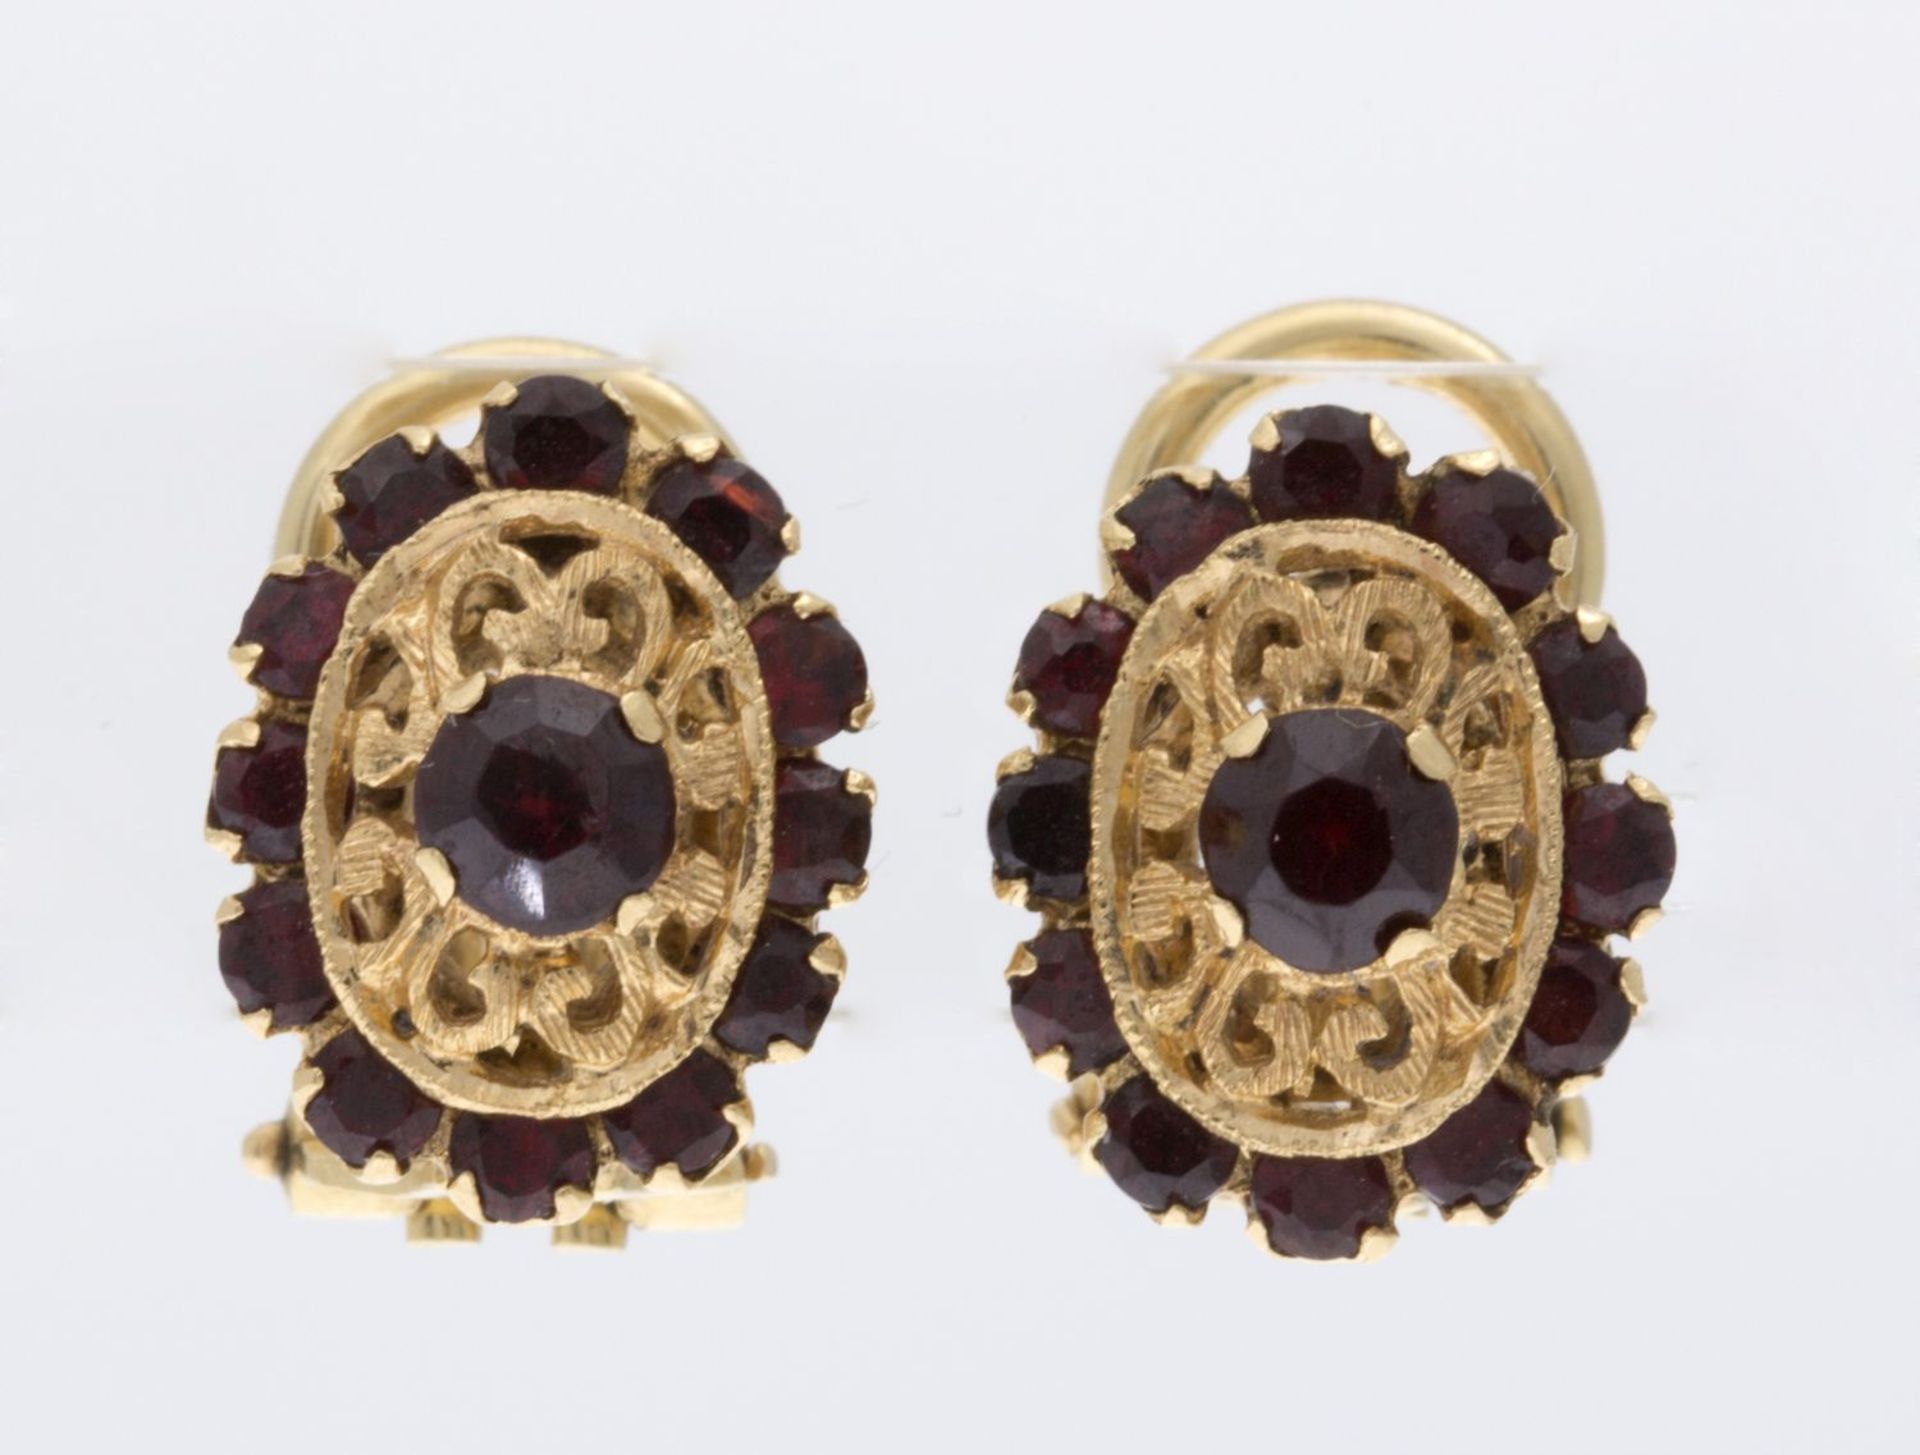 Ein Paar Granat-OhrclipsGelbgold 750. Ovale durchbrochene Form ausgefasst mit kleinen Granate